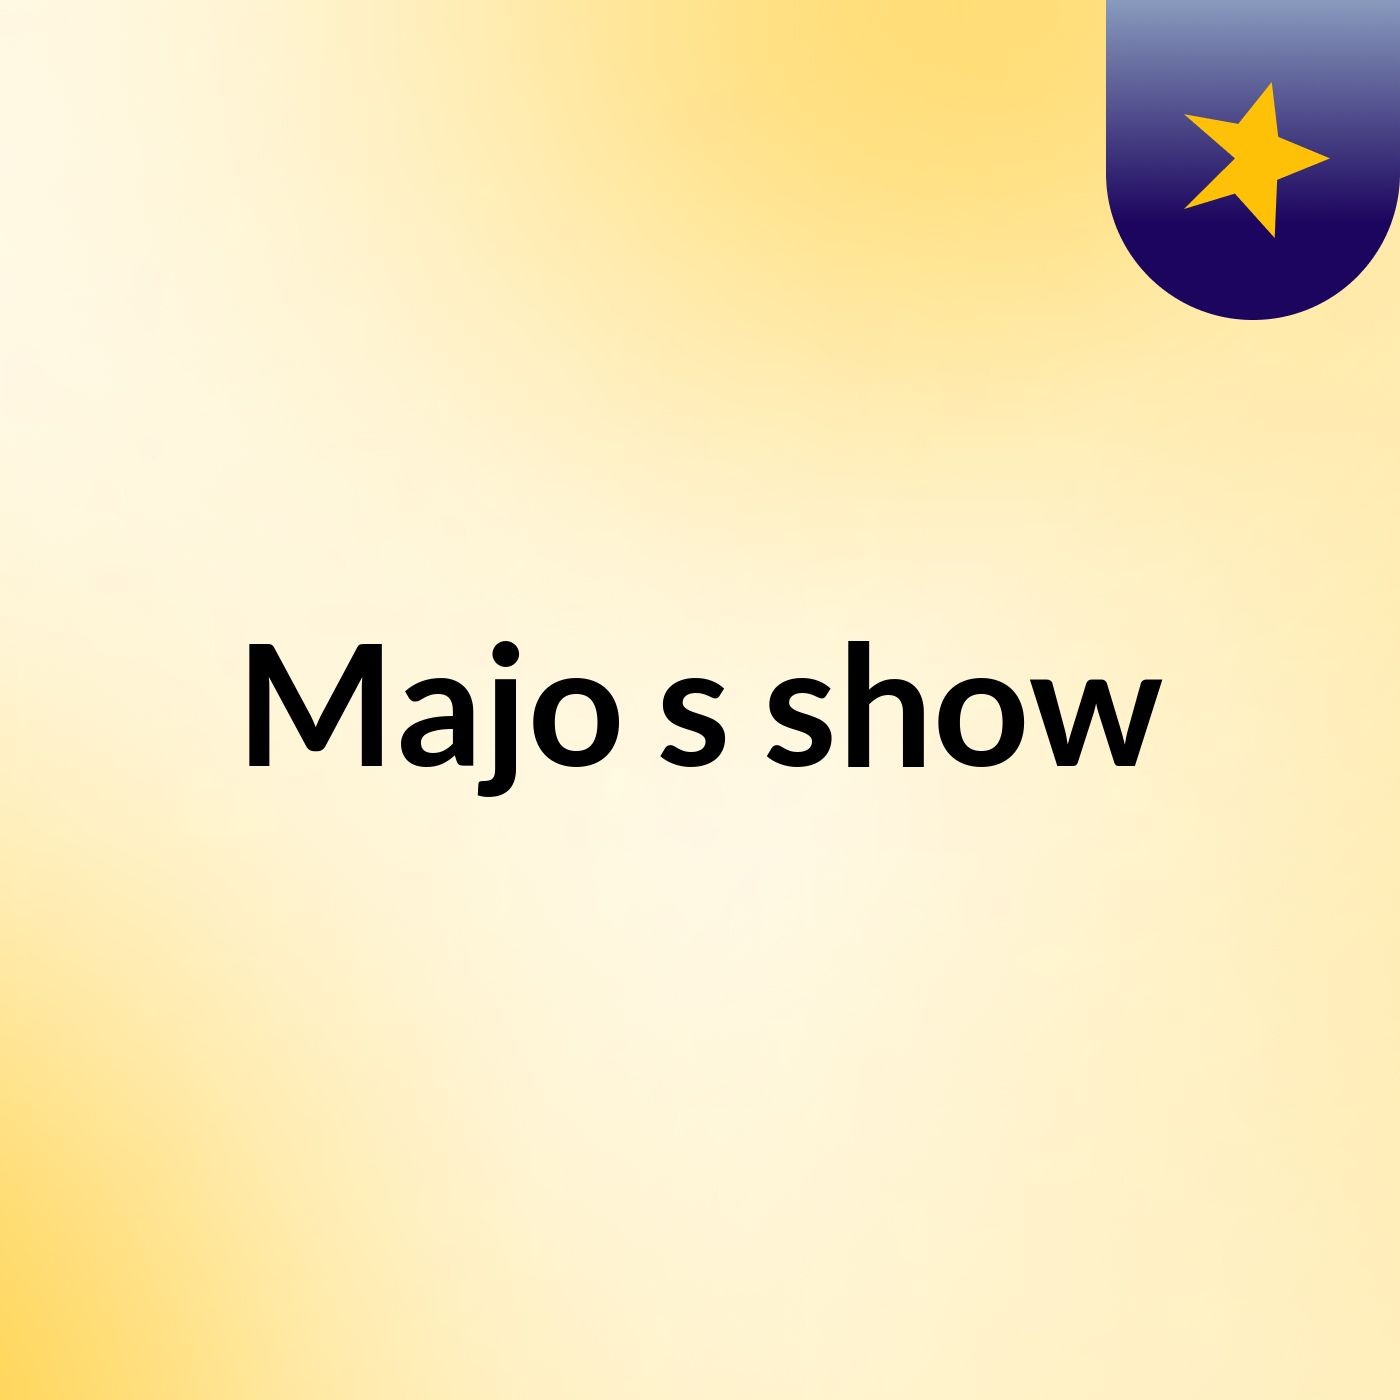 Majo's show